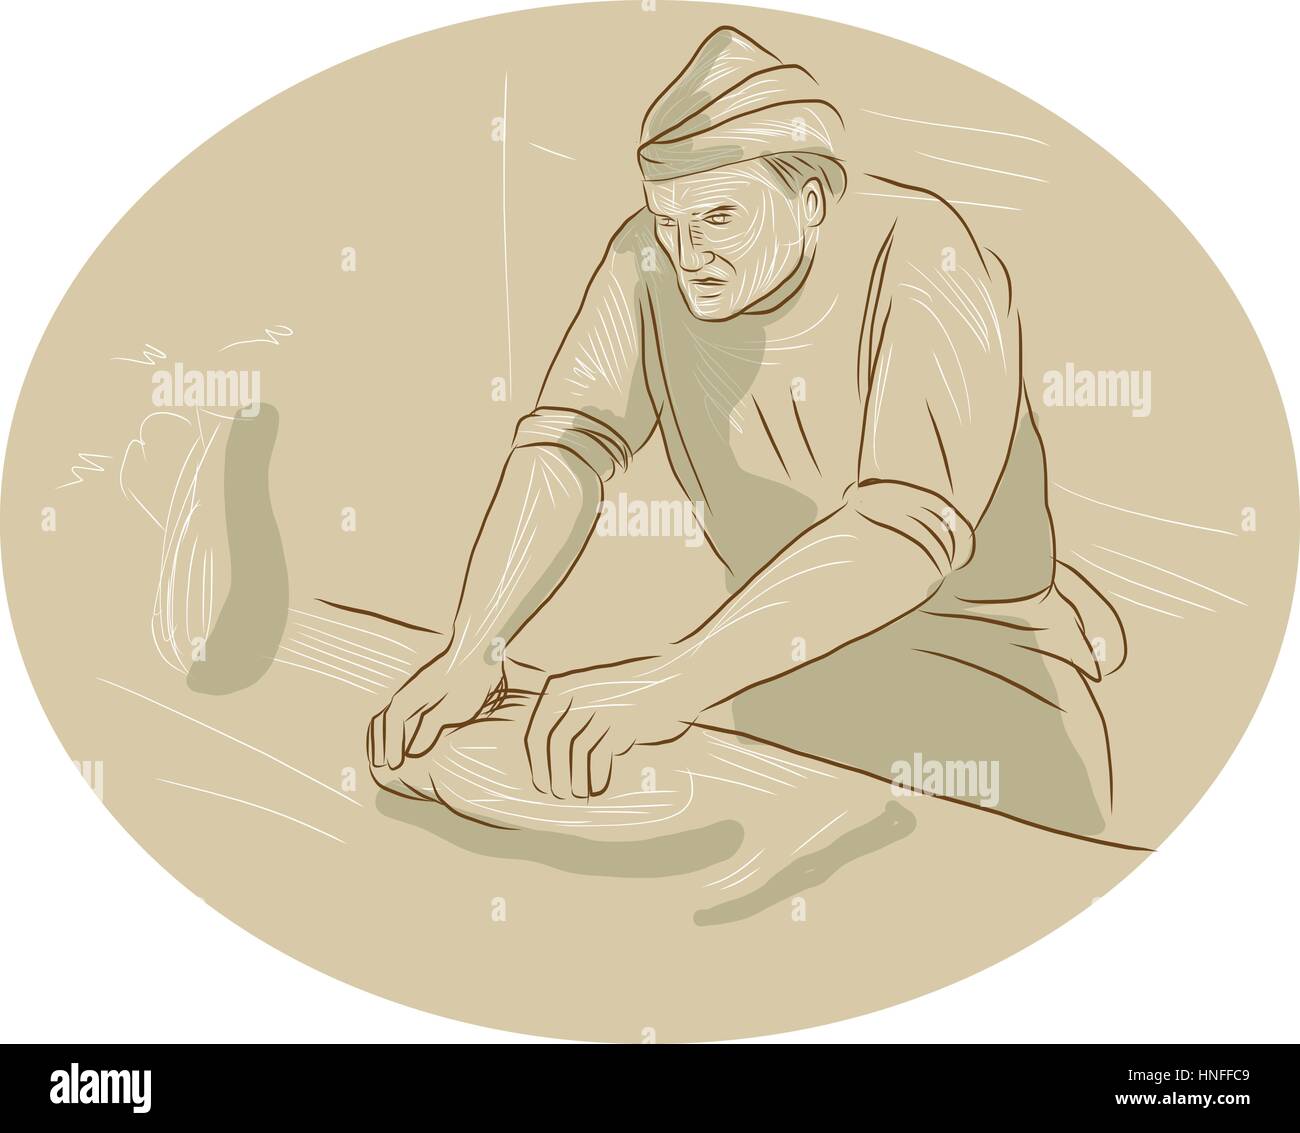 Croquis dessin illustration style de chef cuisinier d'un boulanger à l'époque médiévale la pâte à pétrir le pain dans le set de cuisine à l'intérieur de la forme ovale avec cuisine four Illustration de Vecteur